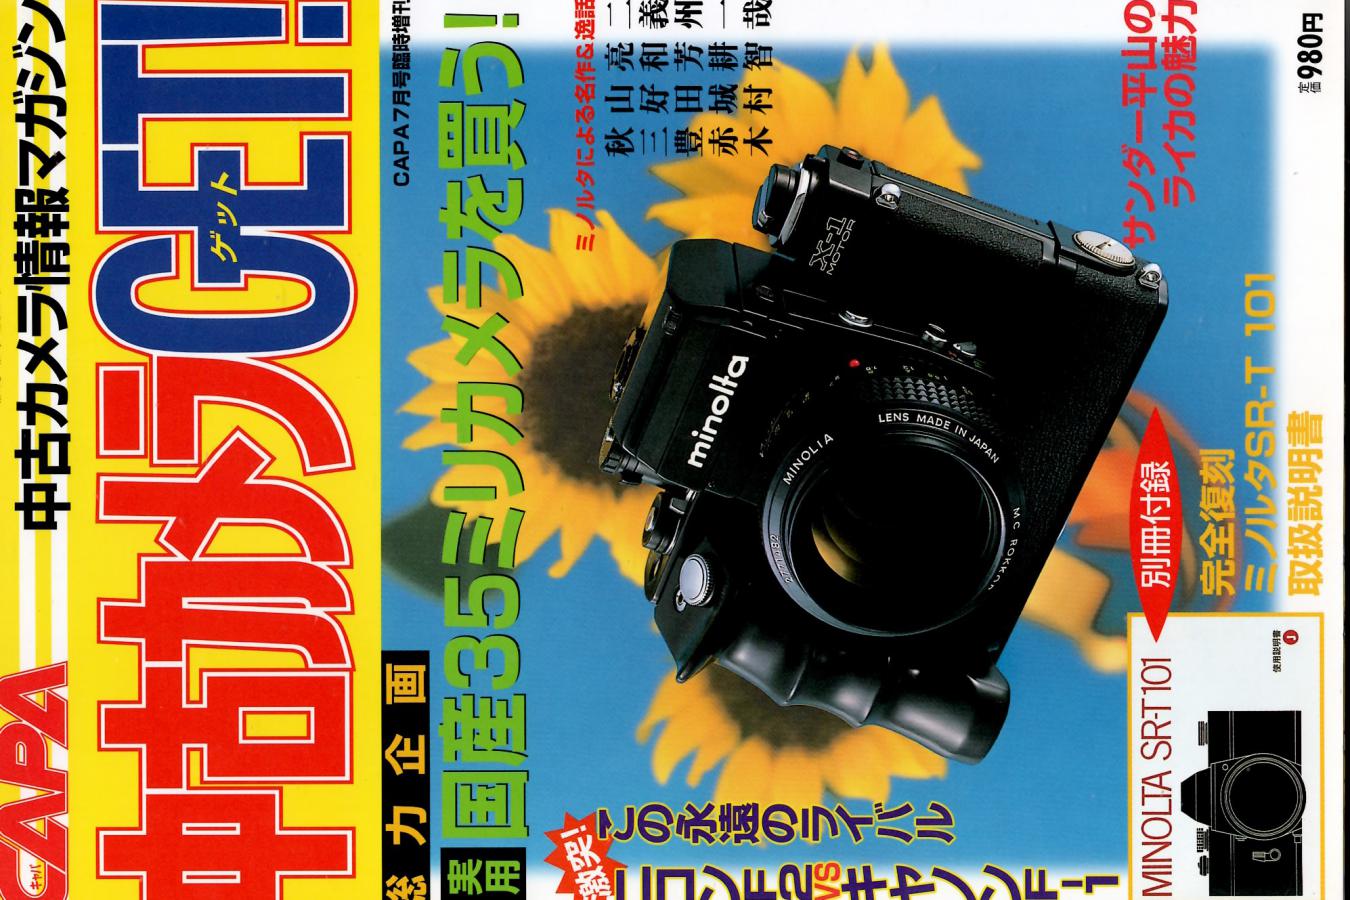 【絶版書籍】中古カメラGET! CAPA99年7月号臨時増刊 【総力企画:実用国産35ミリカメラを買う!】